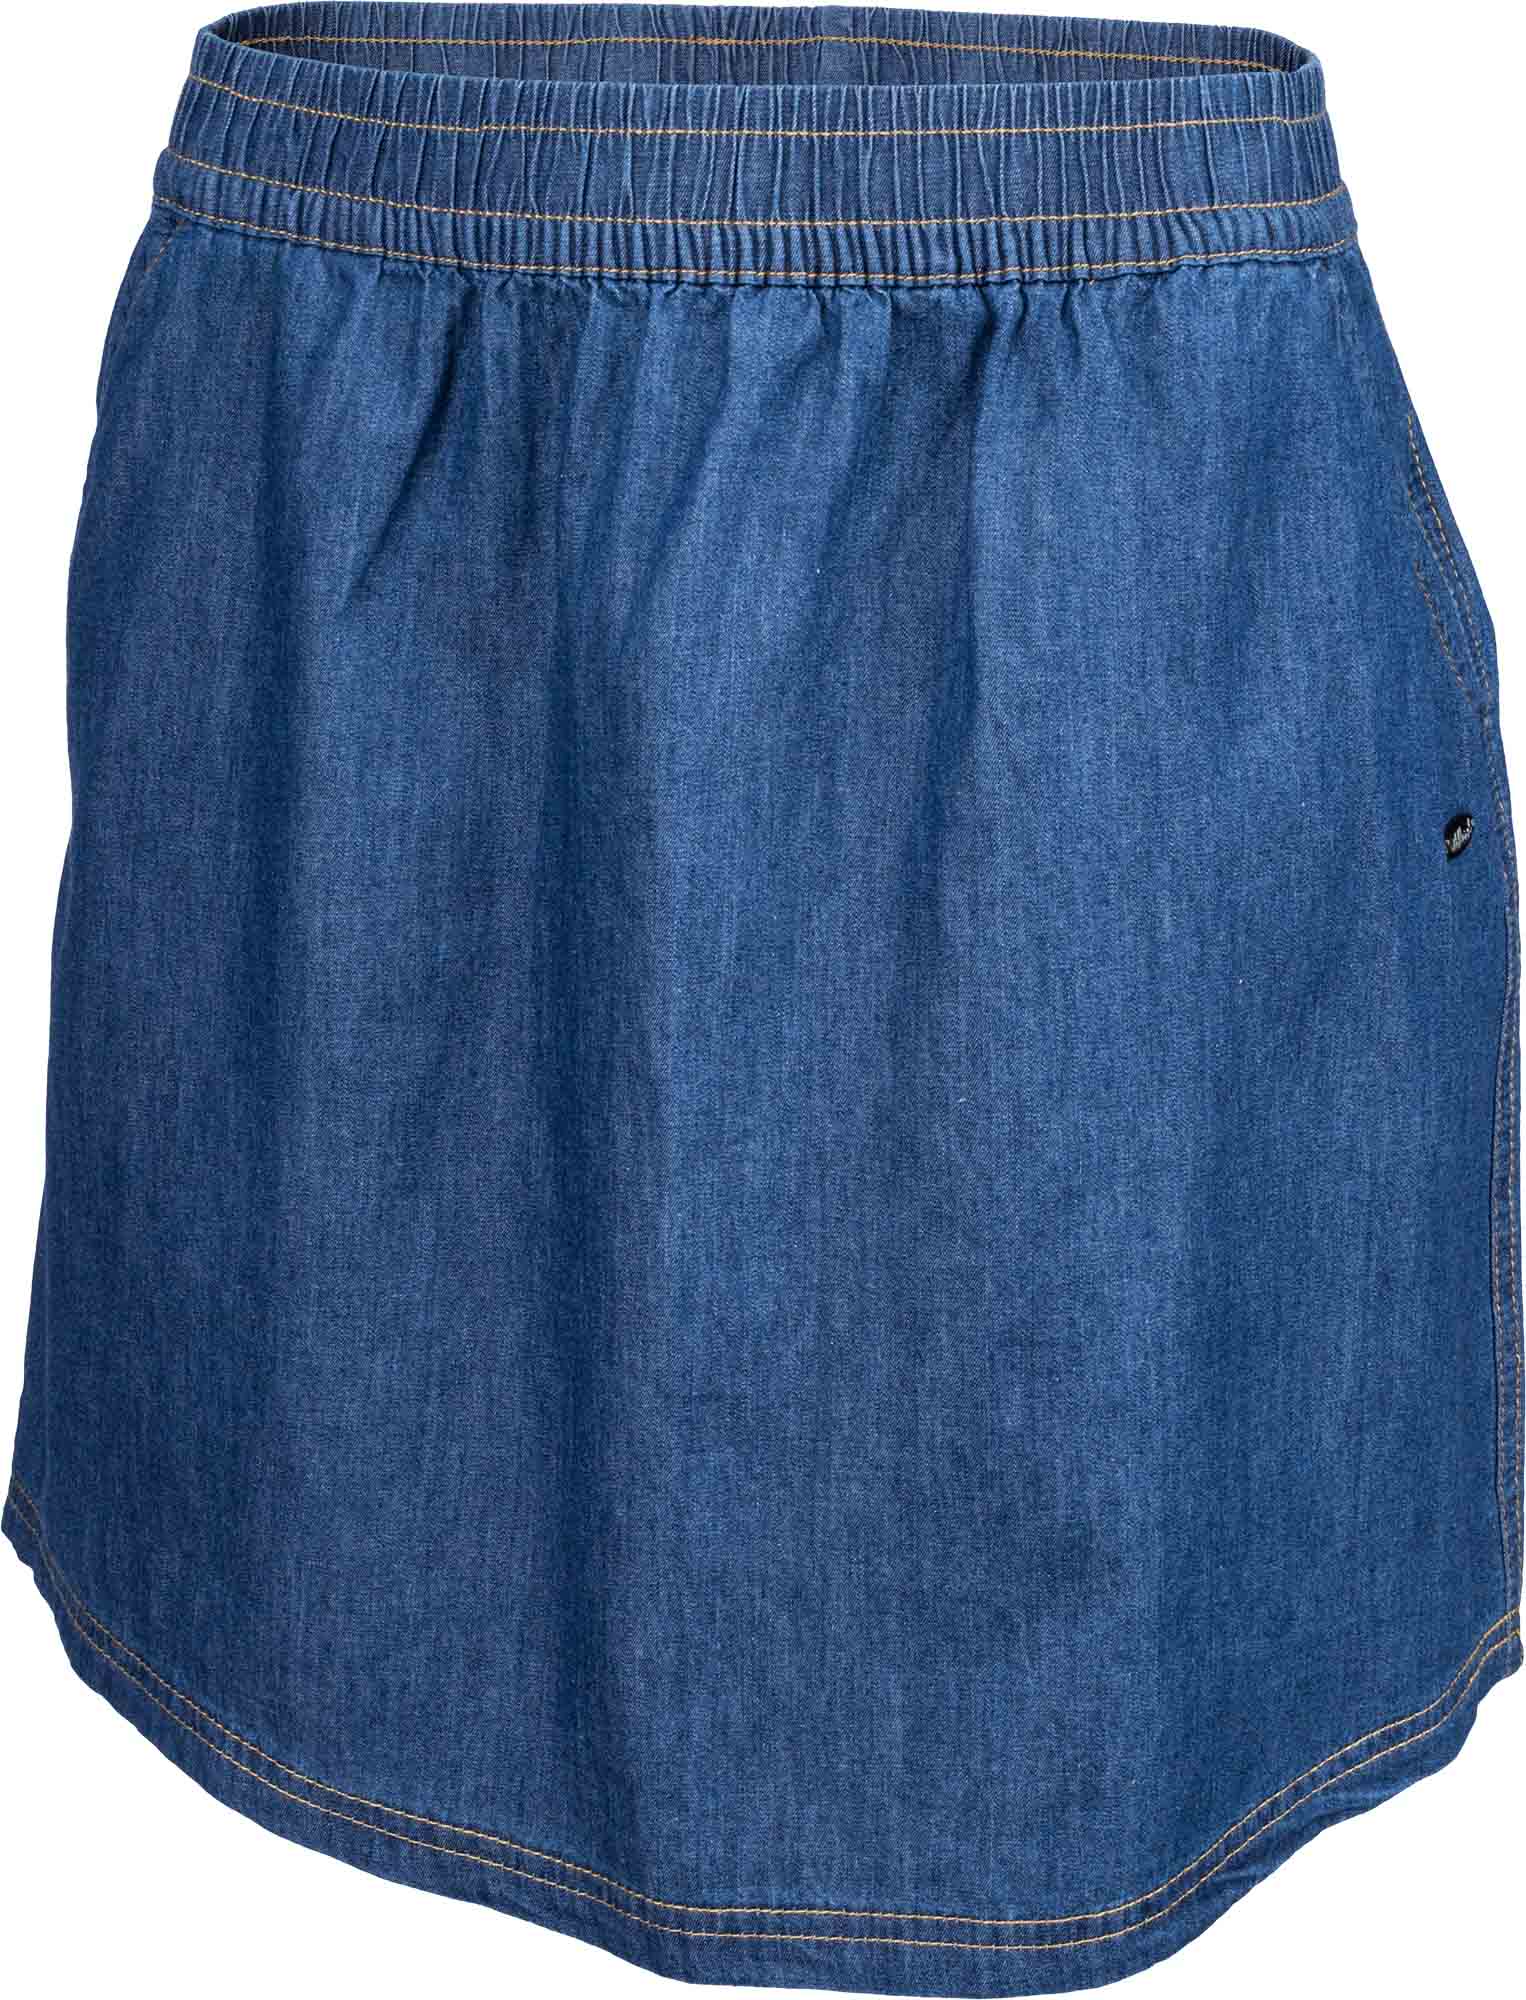 Women's jean skirt